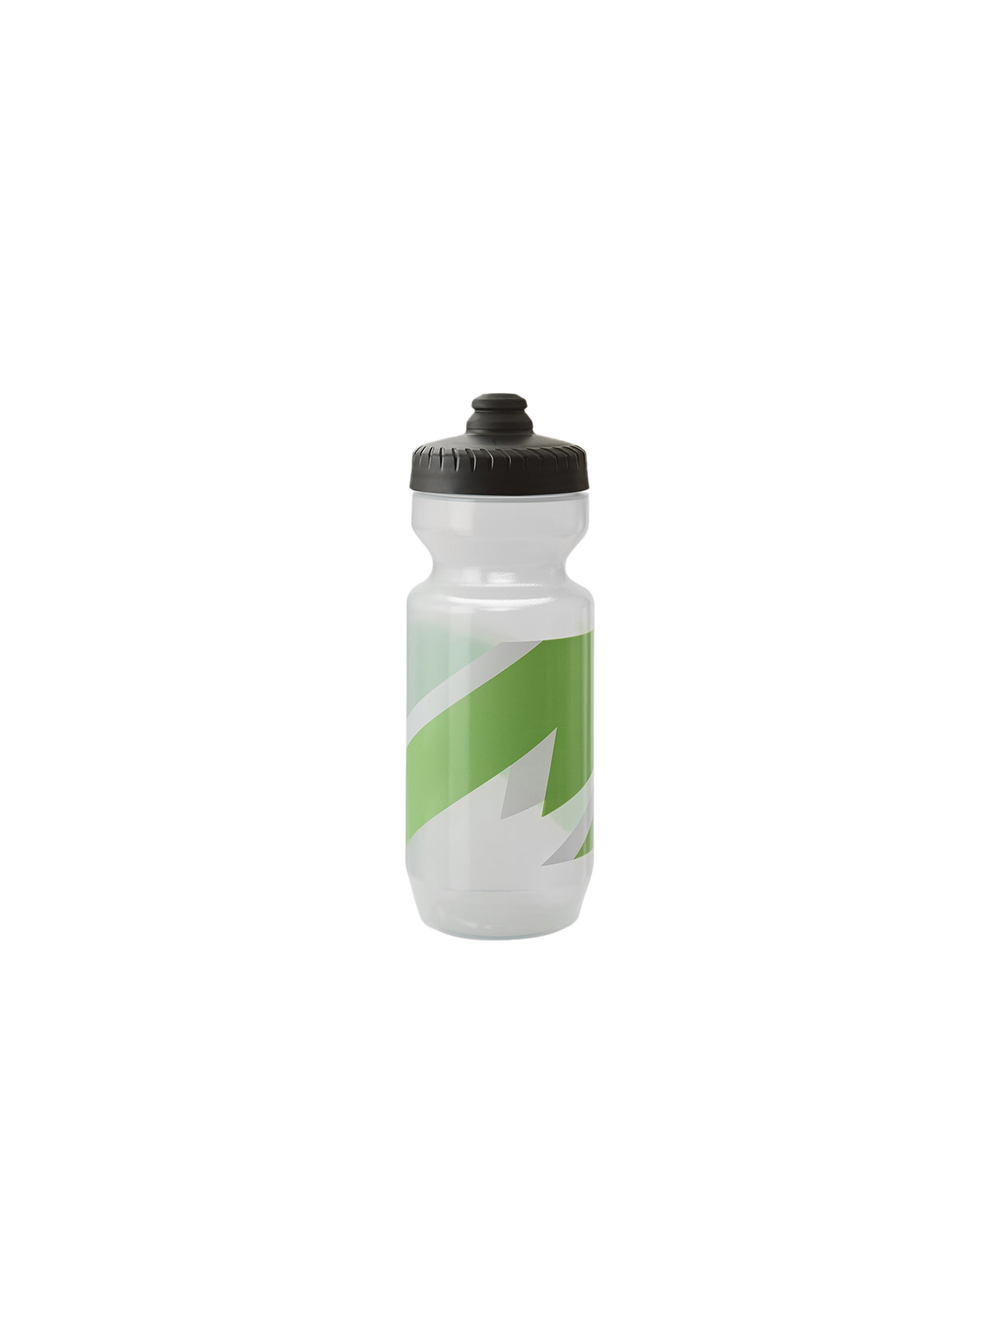 Product Image for Evolve 3D Bottle